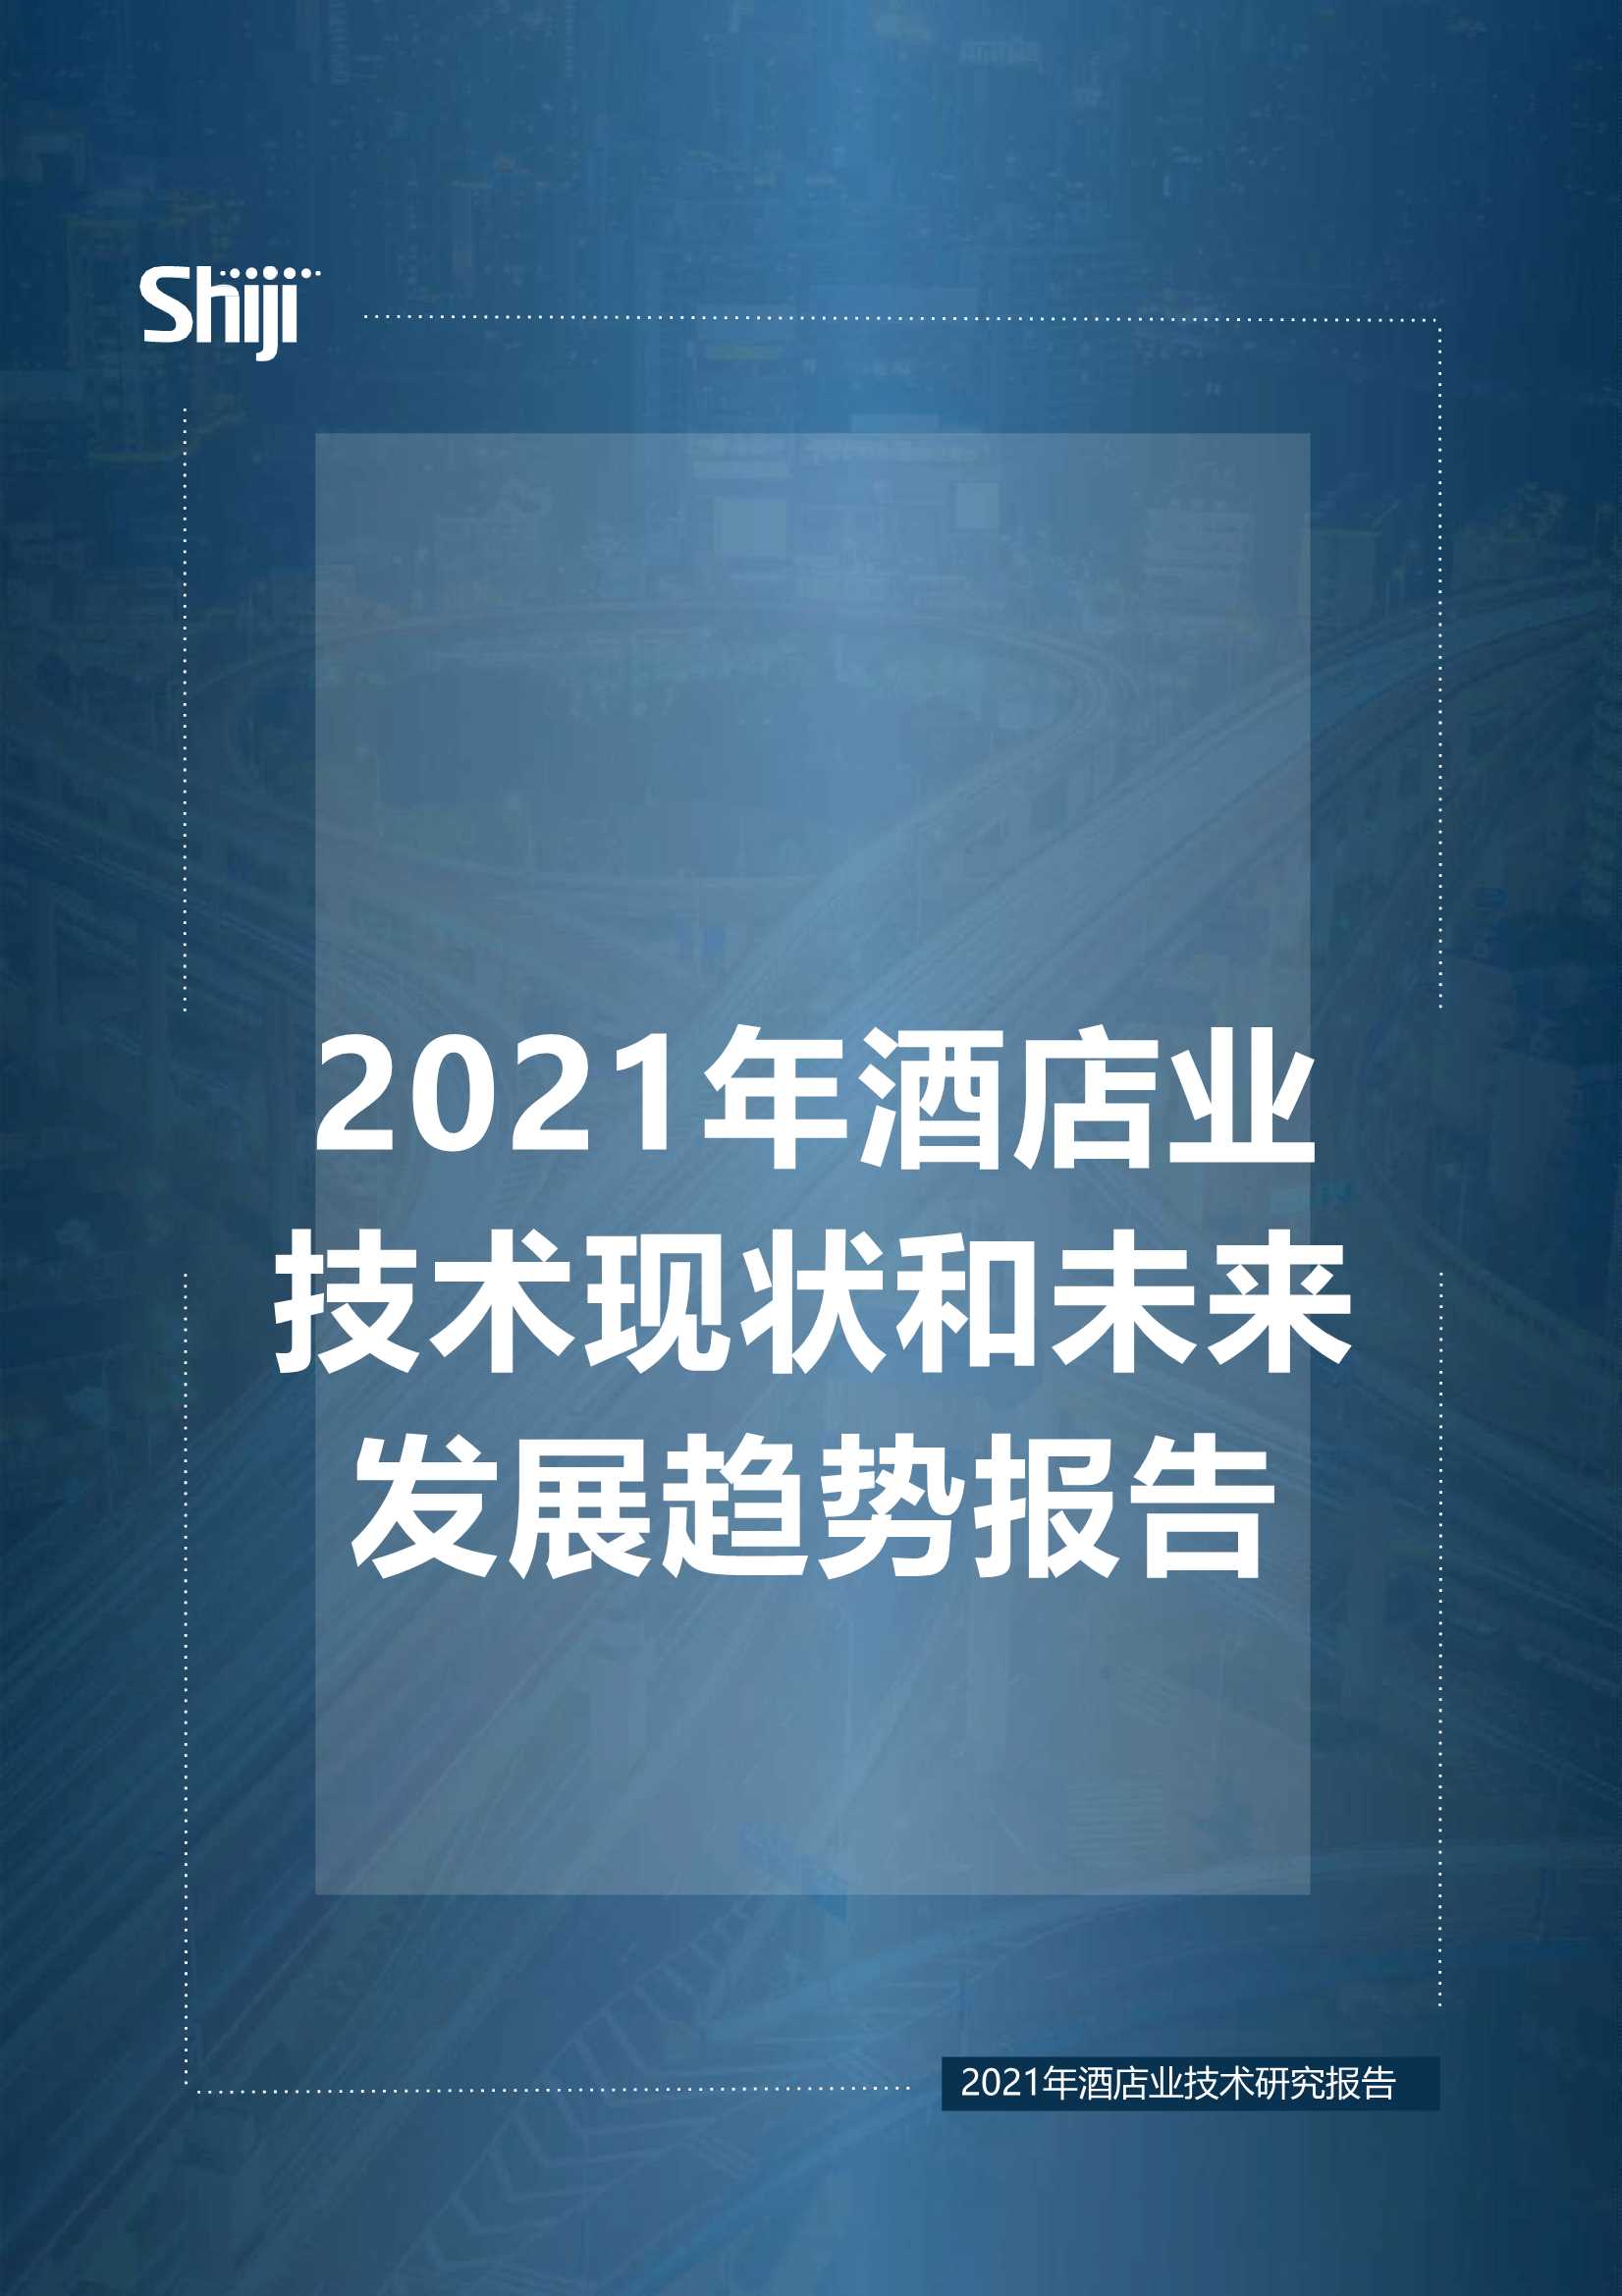 石基信息-2021年酒店业技术现状和未来发展趋势-2021.06-16页